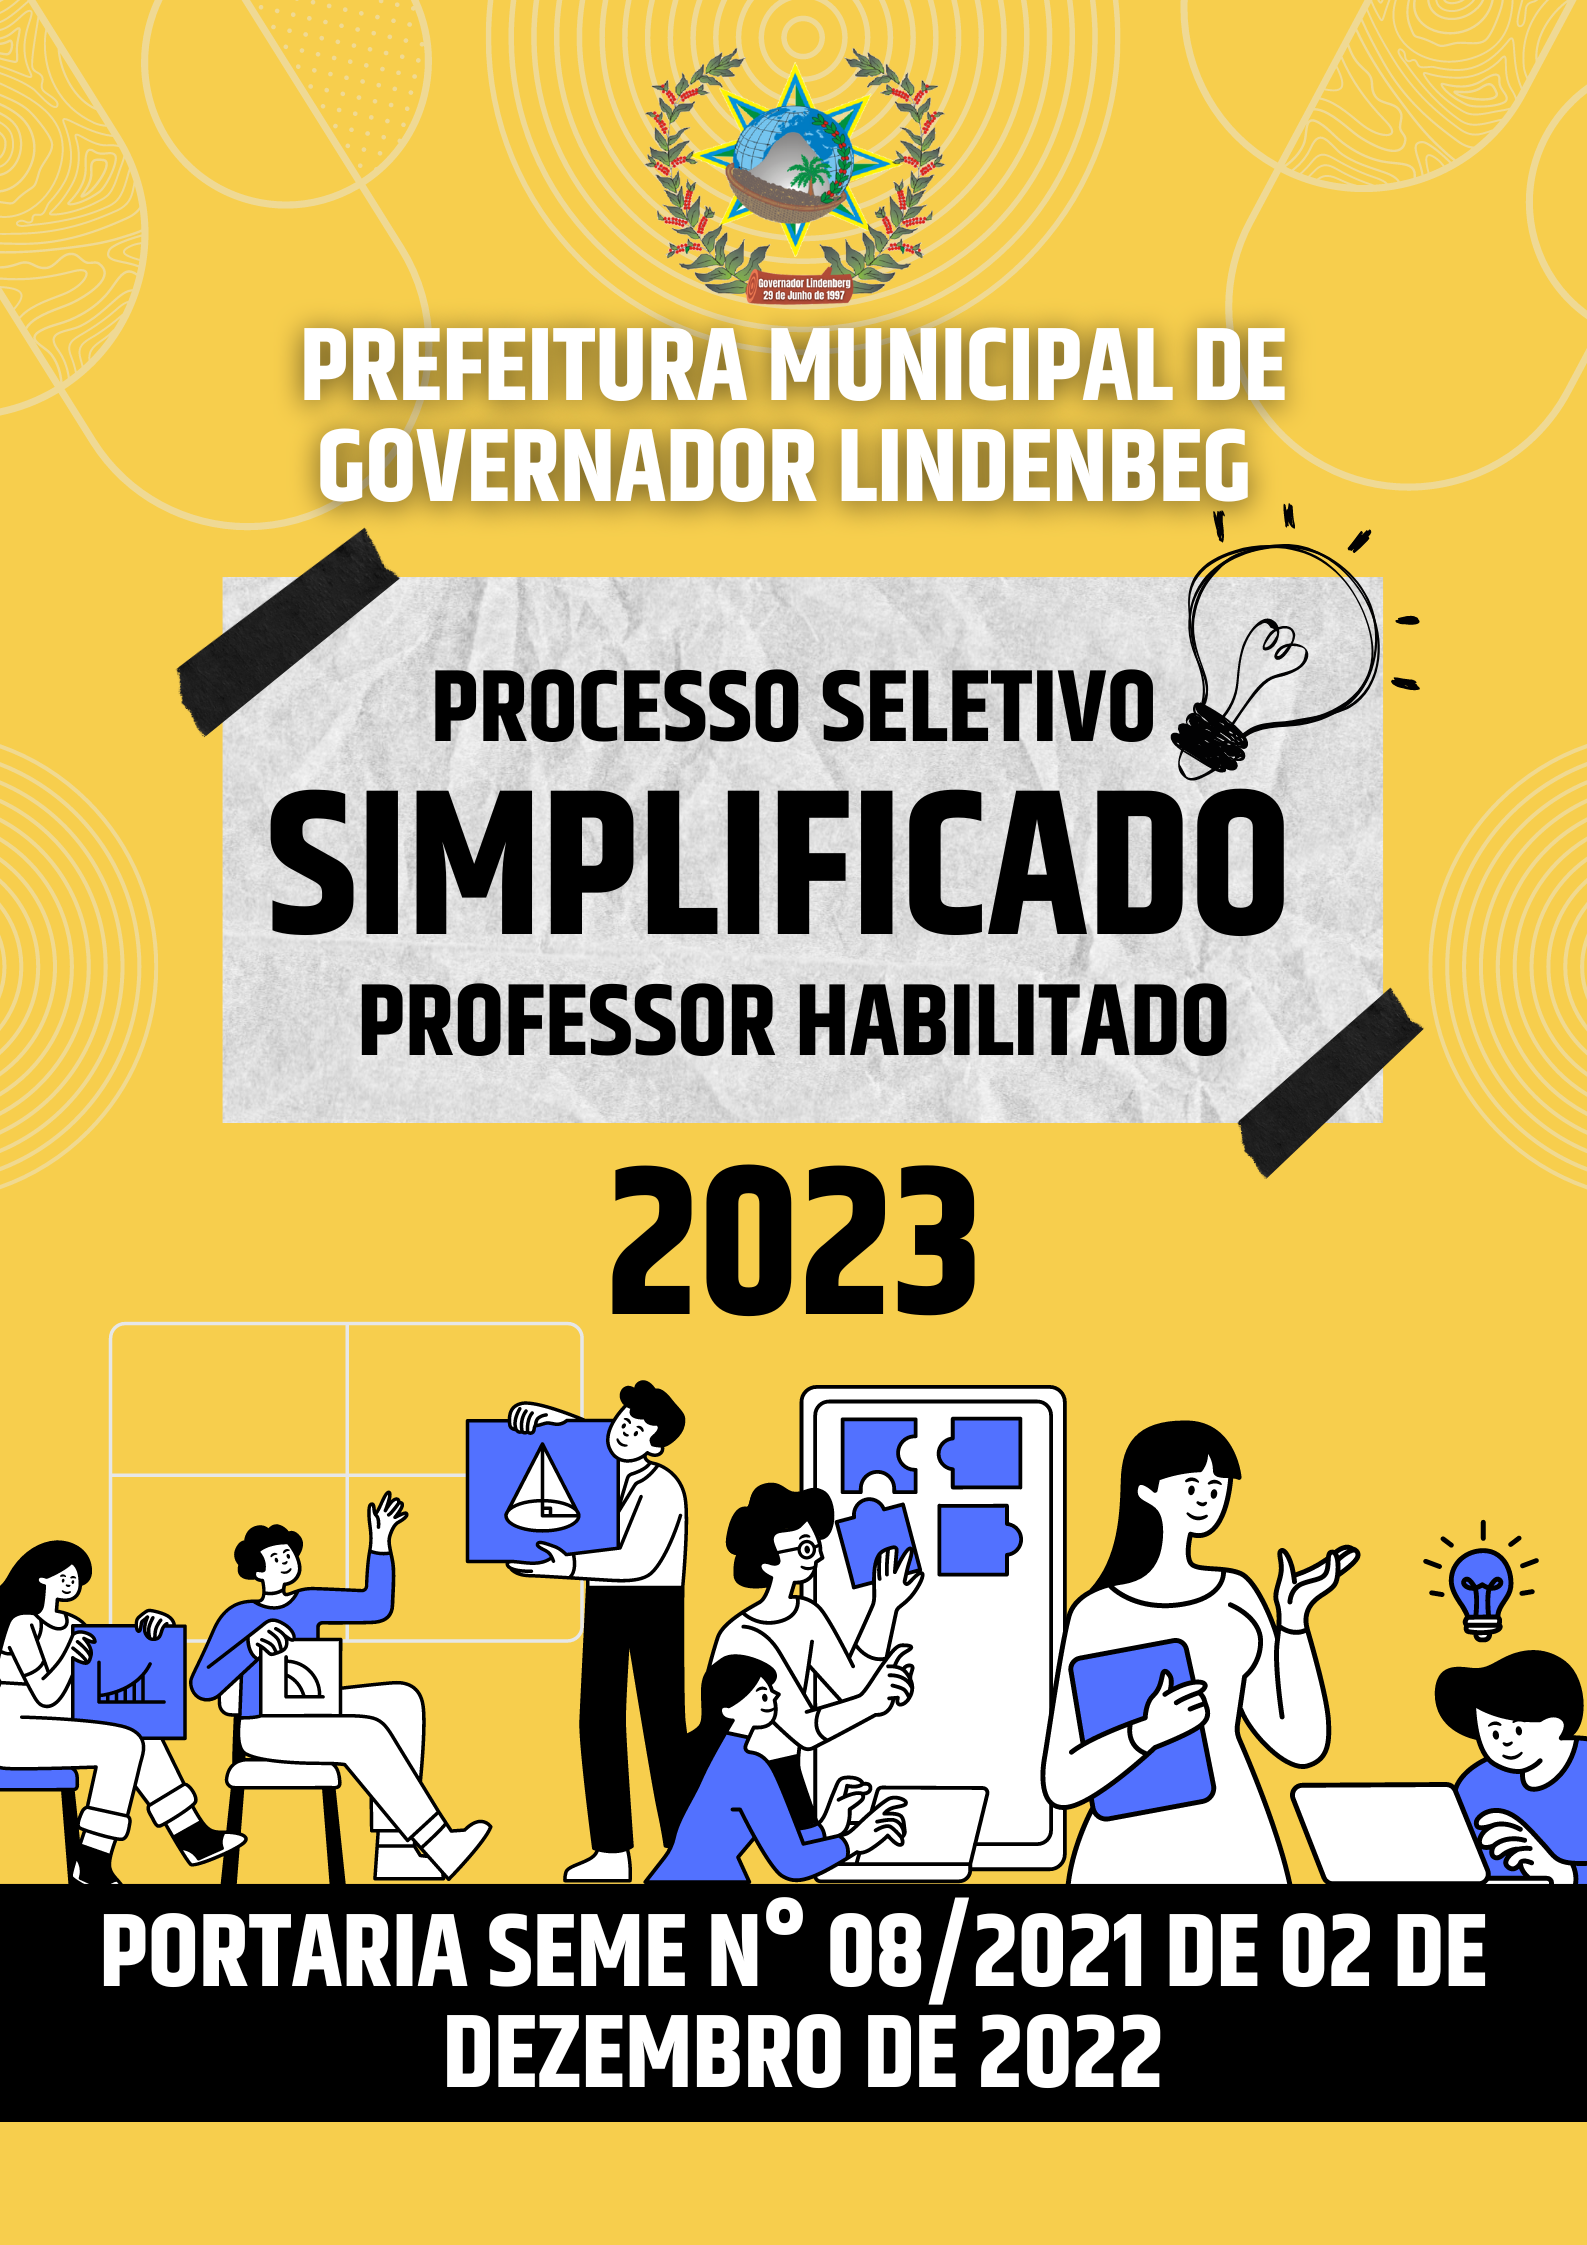 PROCESSO SELETIVO SIMPLIFICADO PROFESSORES HABILITADOS – PORTARIA SEMEC N° 08/2021